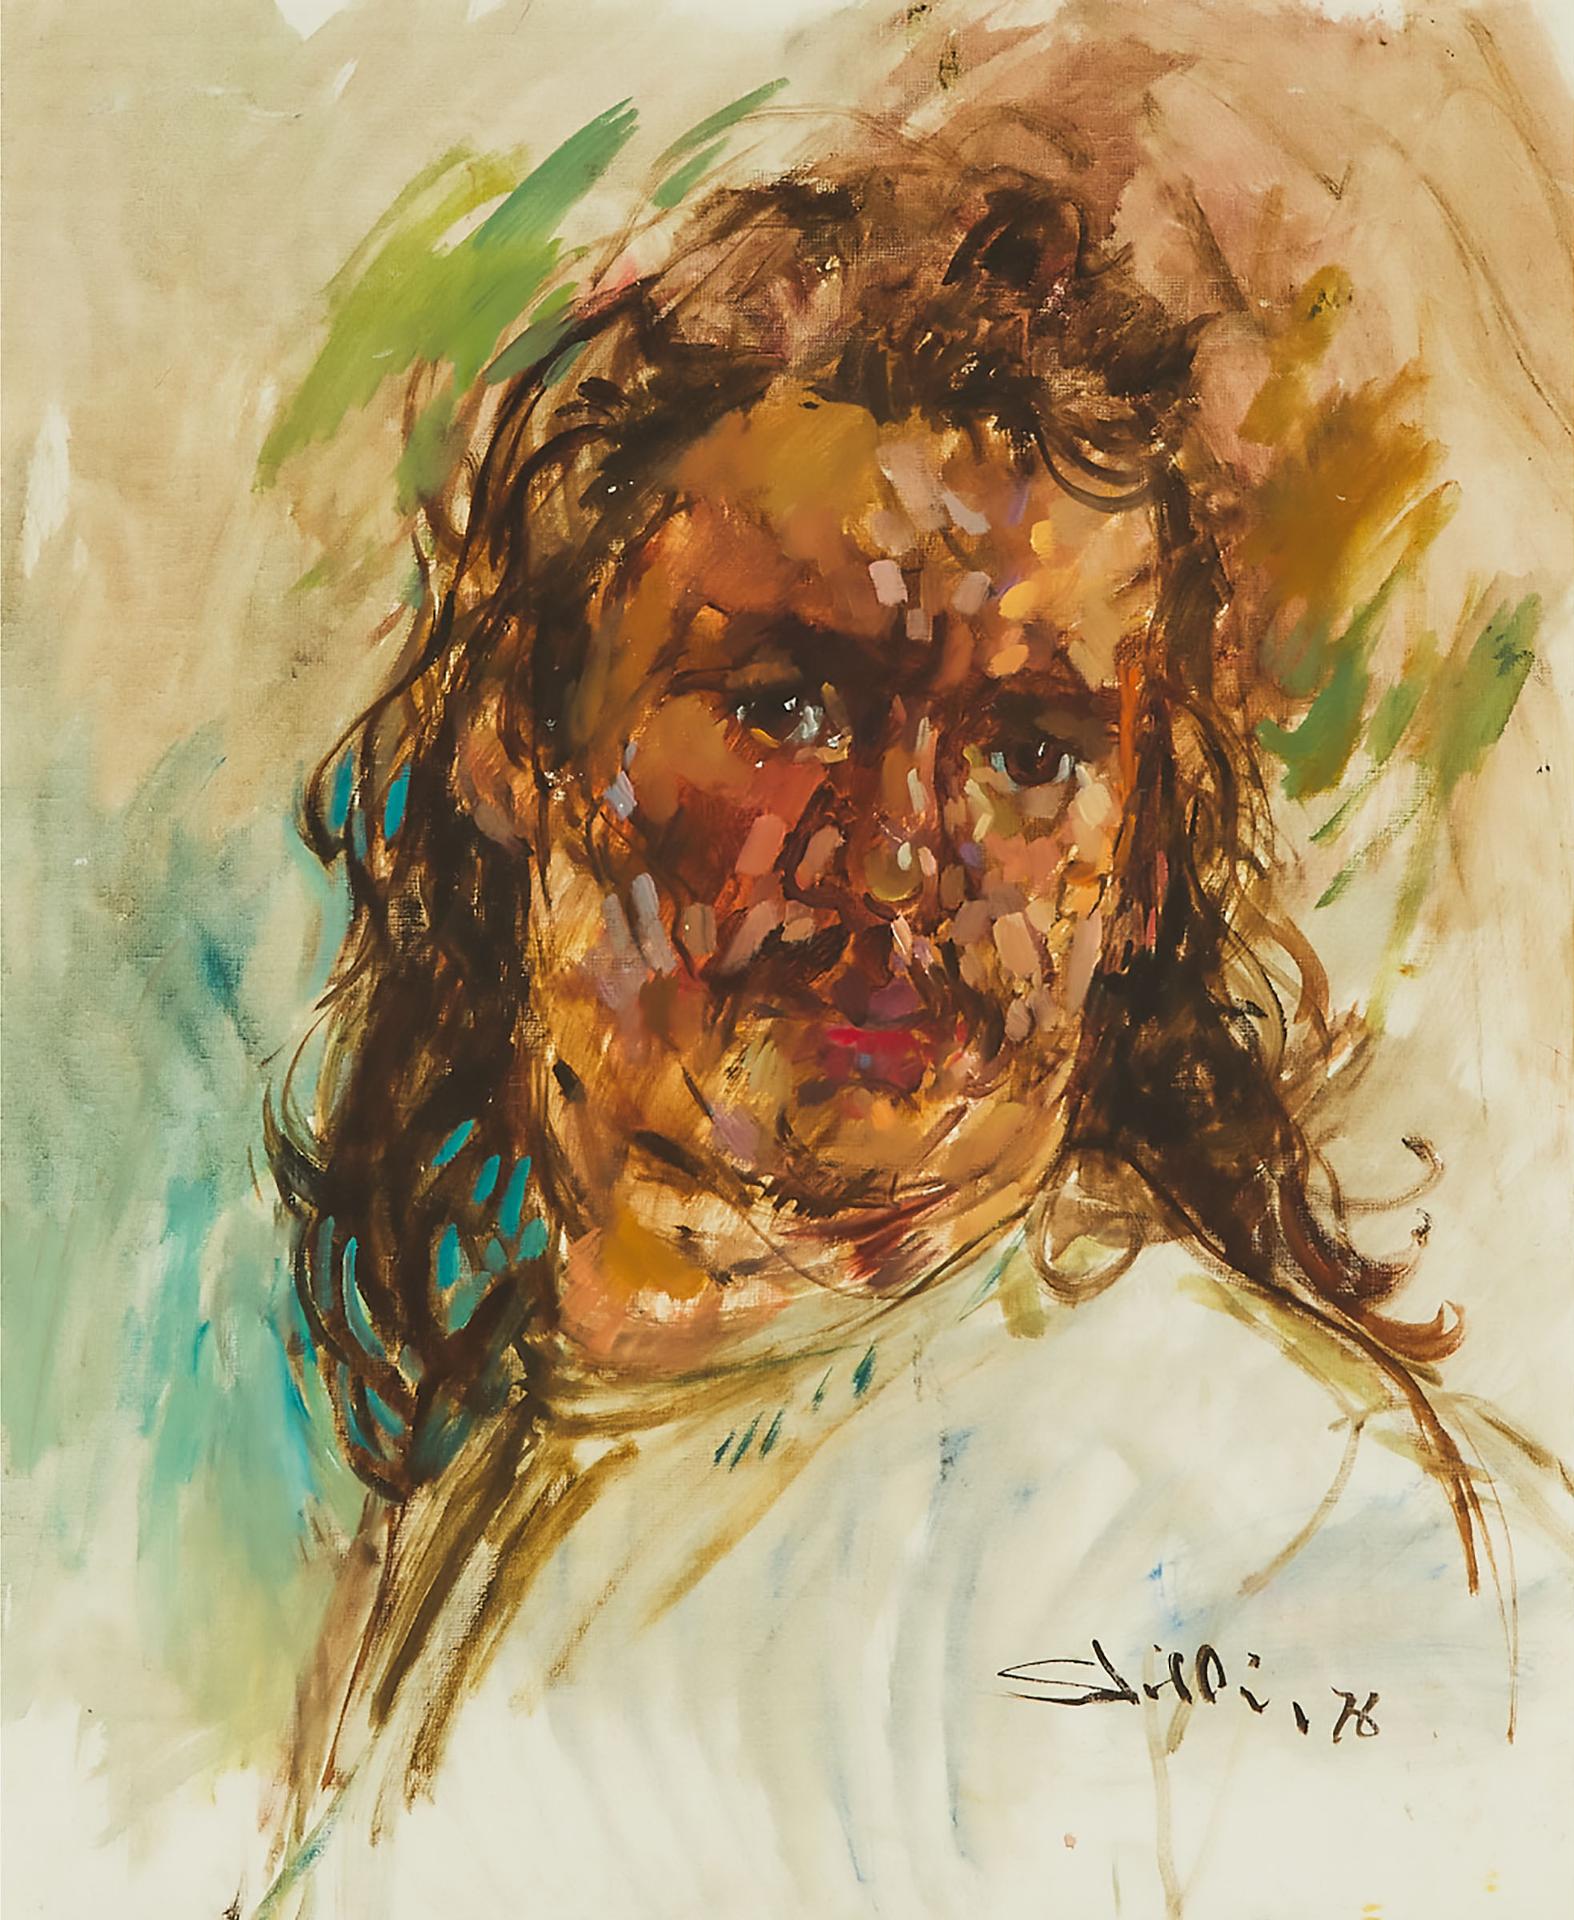 Arthur Shilling (1941-1986) - Self Portrait, 1976